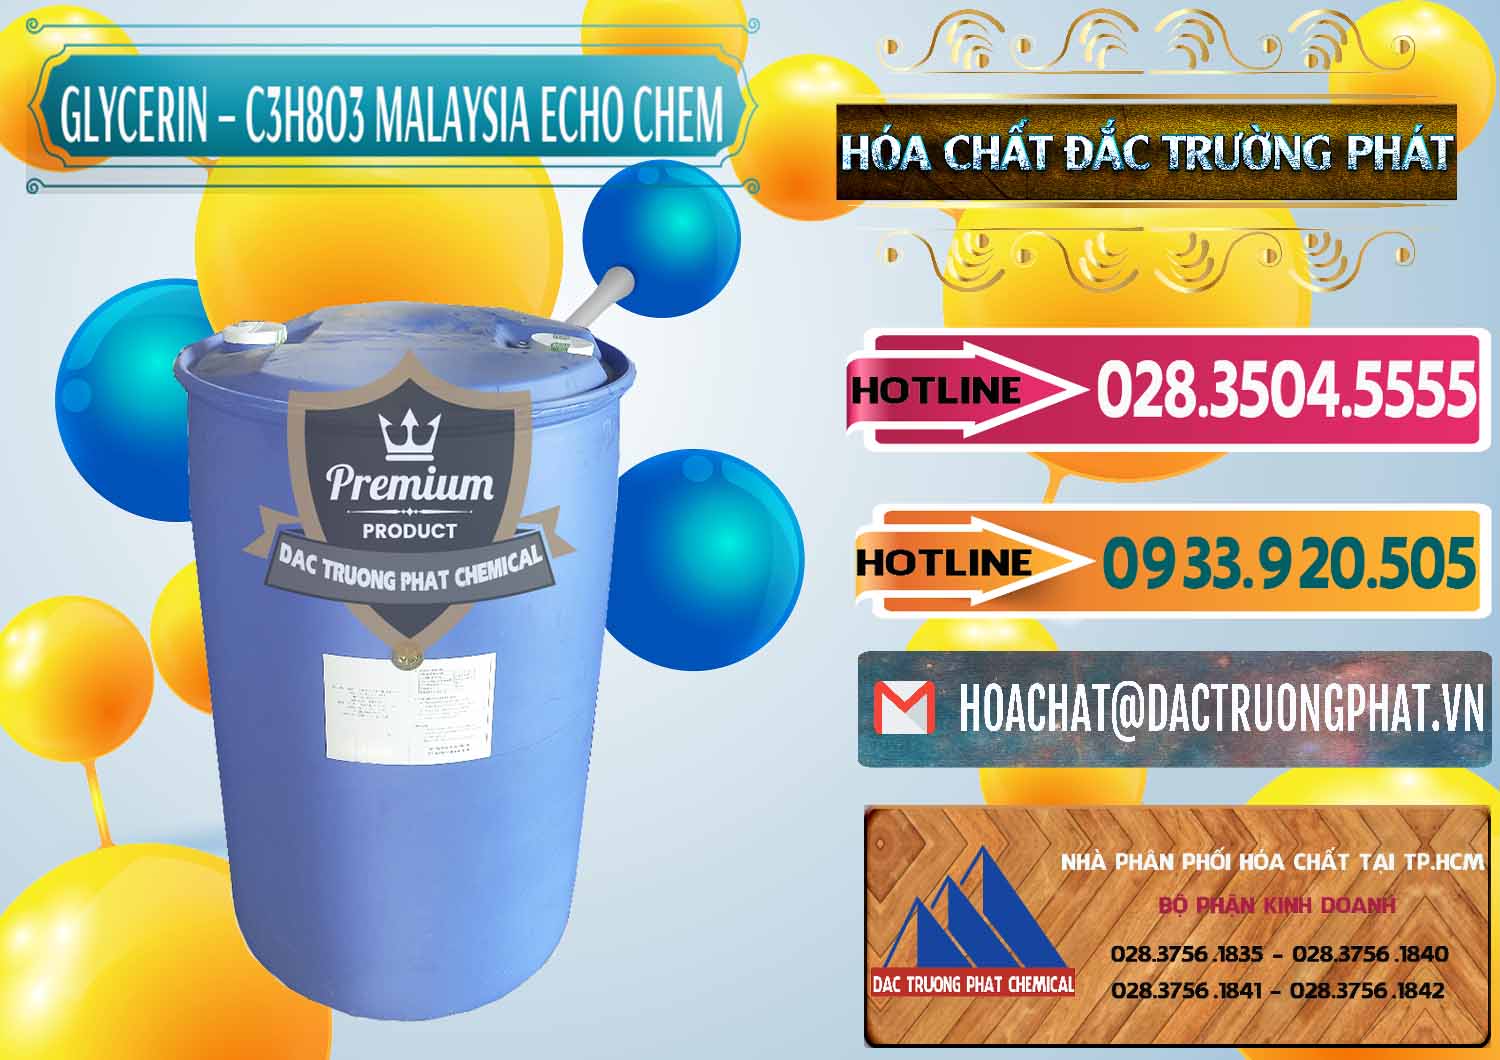 Nơi chuyên cung ứng - bán Glycerin – C3H8O3 99.7% Echo Chem Malaysia - 0273 - Đơn vị phân phối & cung cấp hóa chất tại TP.HCM - dactruongphat.vn